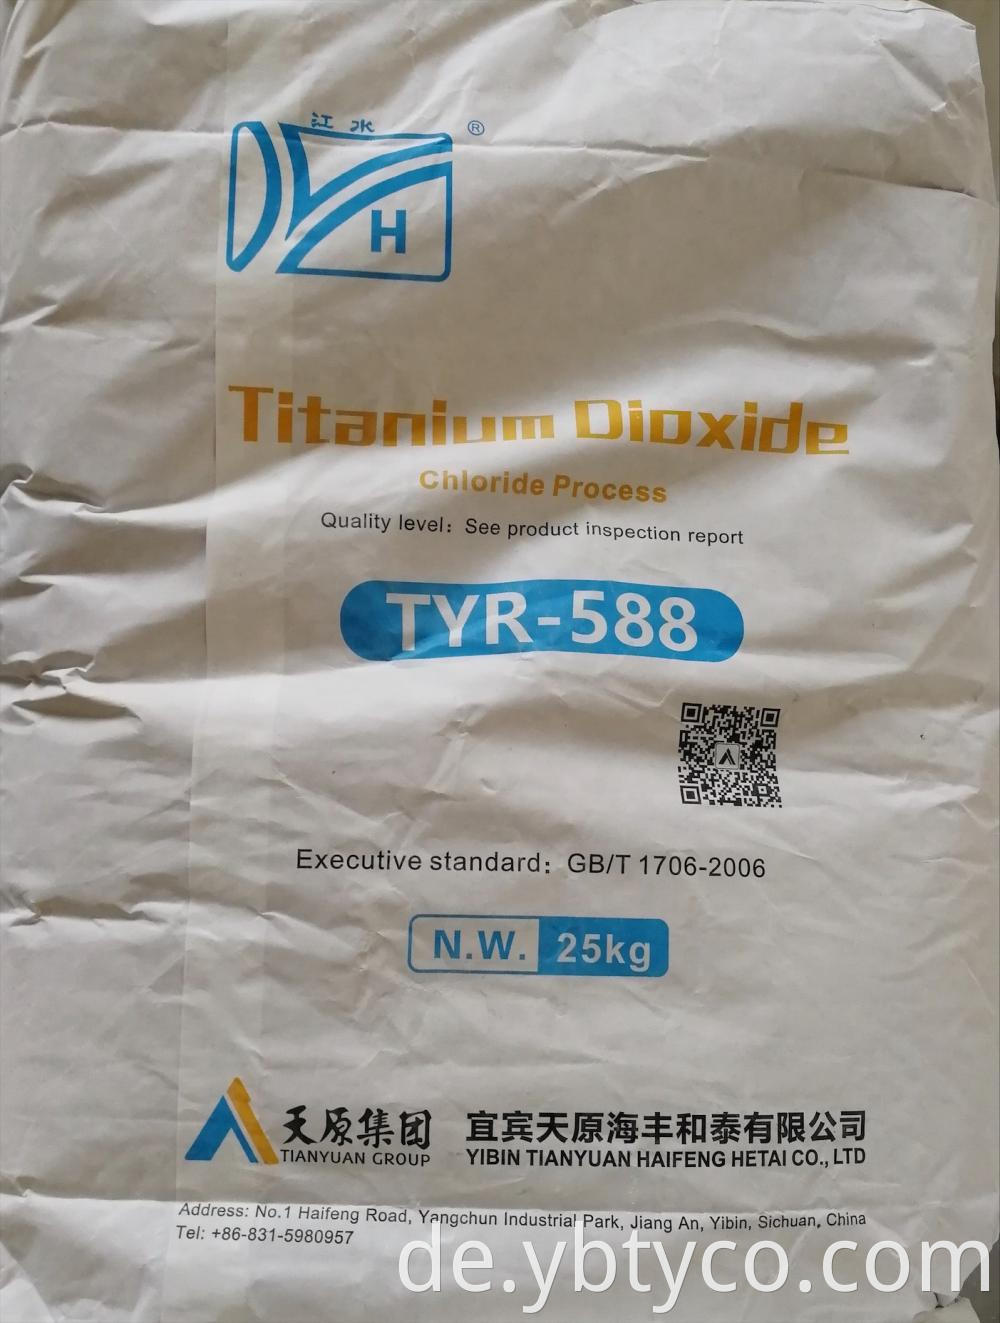 Titanium Dioxide Sulfric